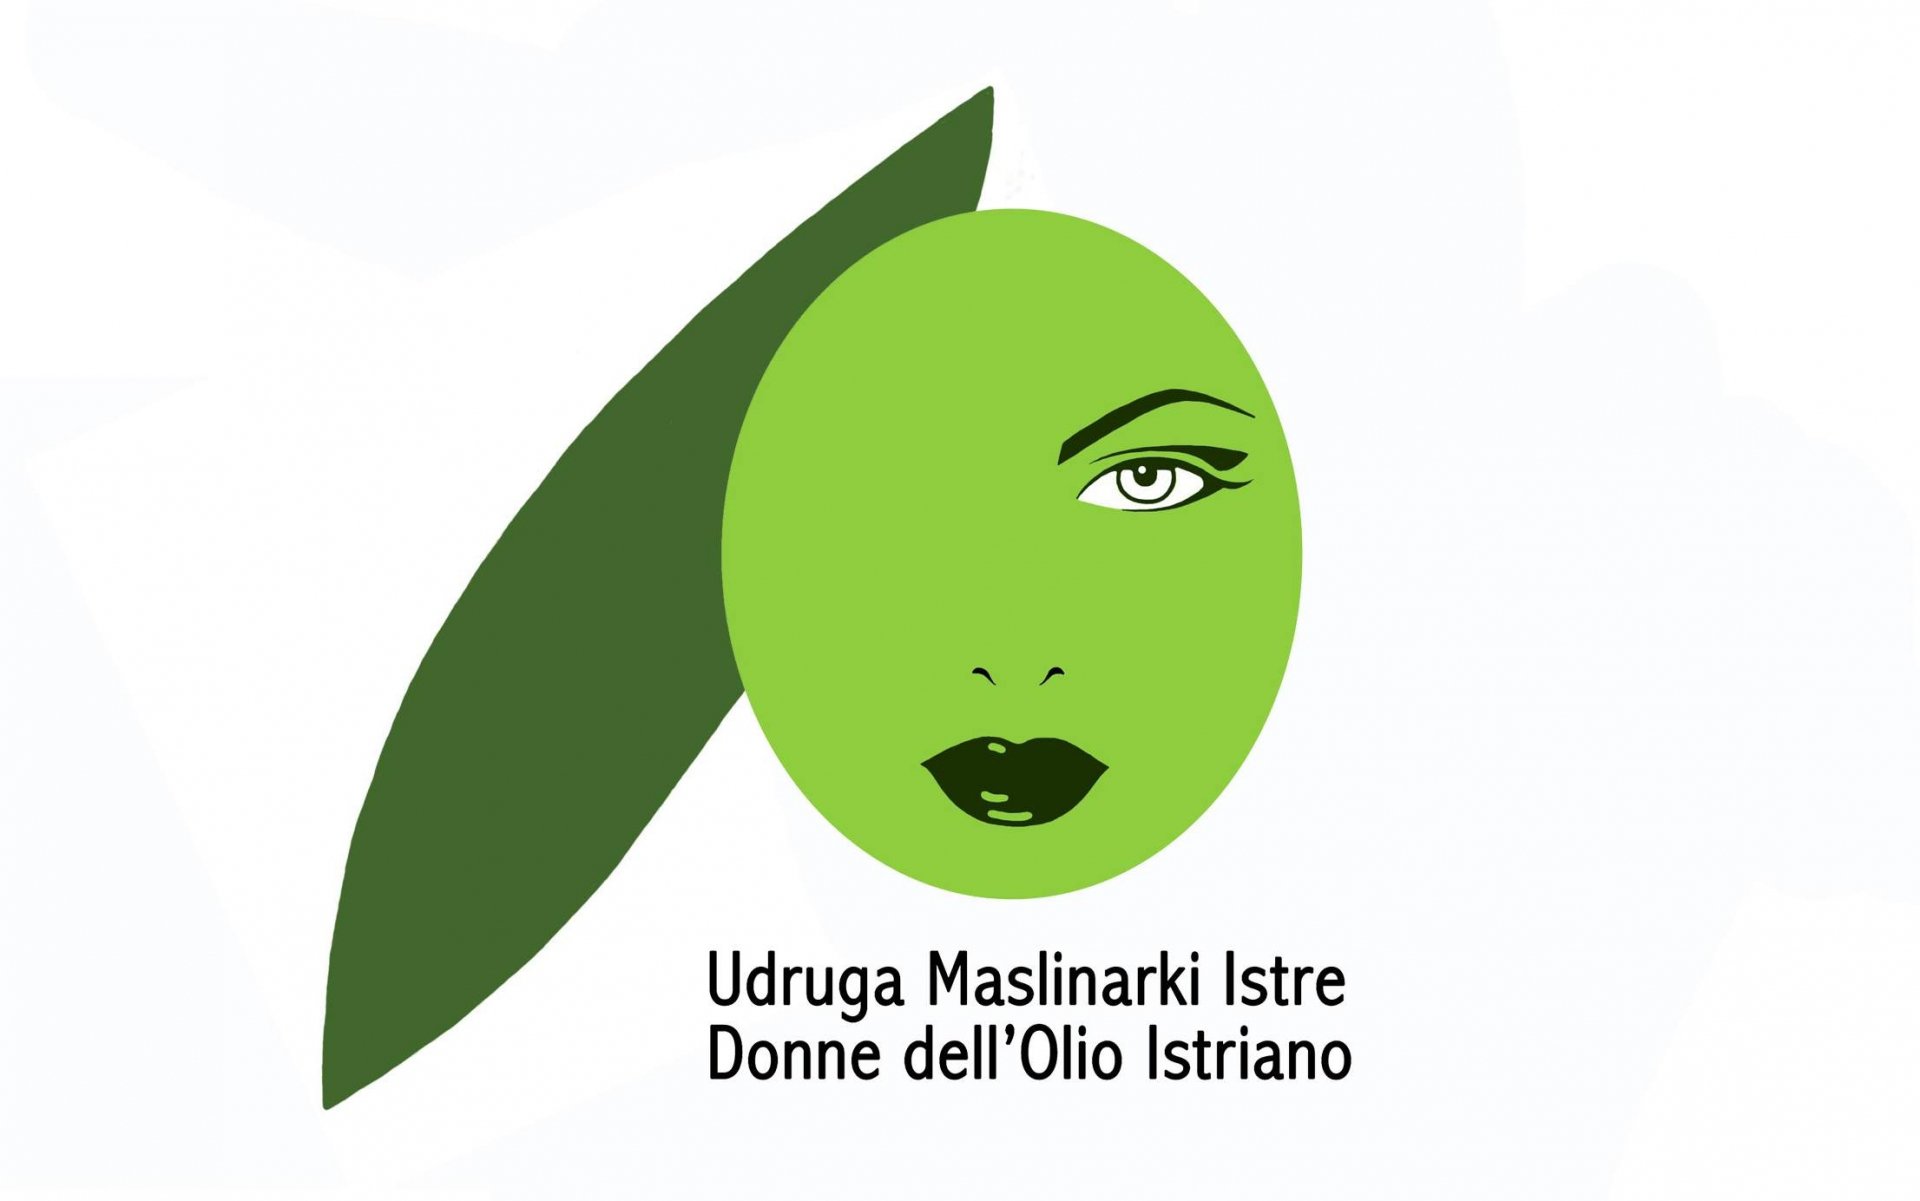 Donne dell’Olio Istriano, Udruga Maslinarki Istre